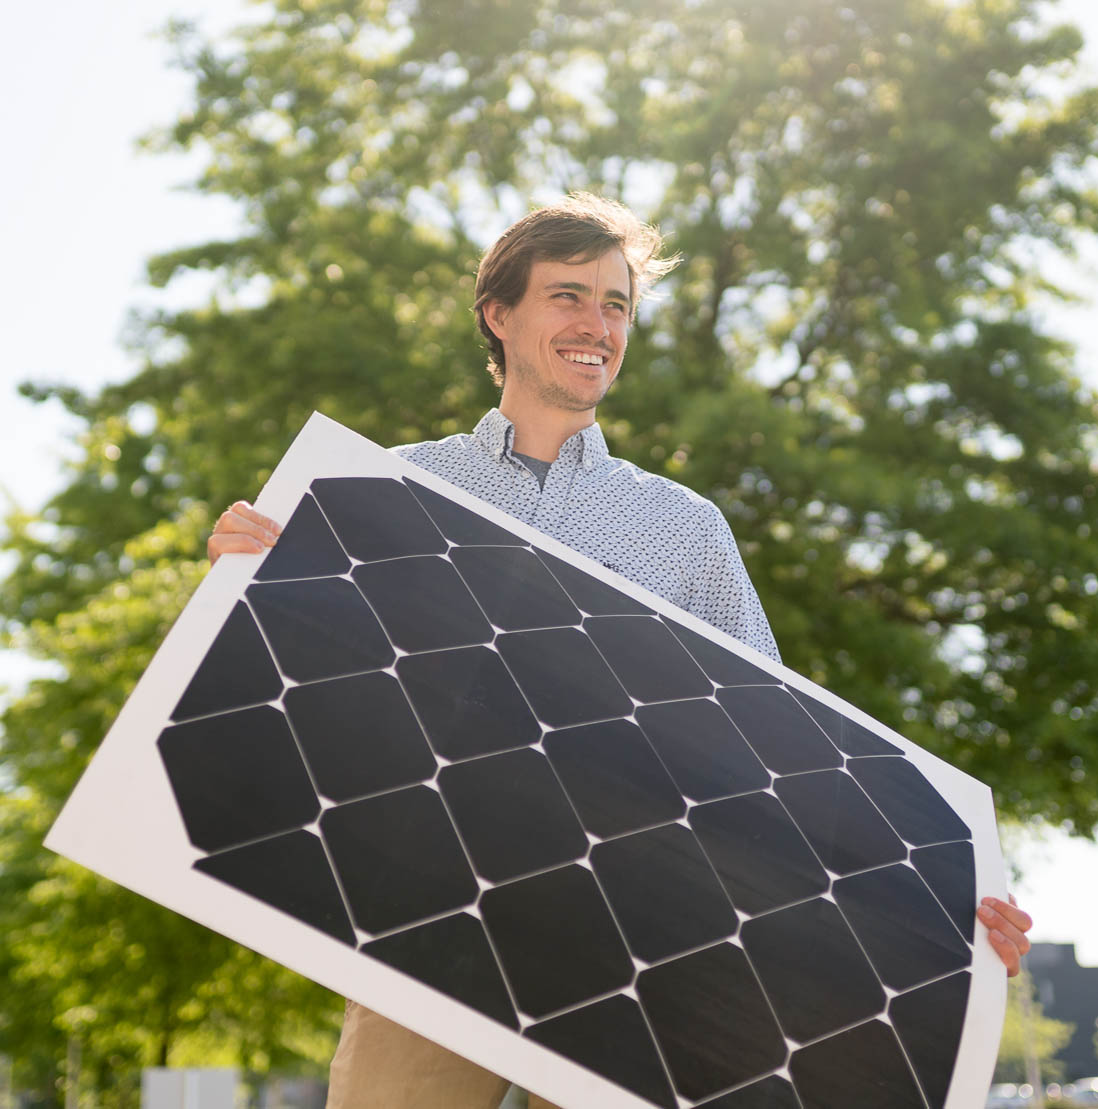 Sioux verzorgt het volledige softwareontwikkelingsproces voor Lightyear One, de eerste elektrische, zelfladende gezinsauto die gebruik maakt van zonne-energie.